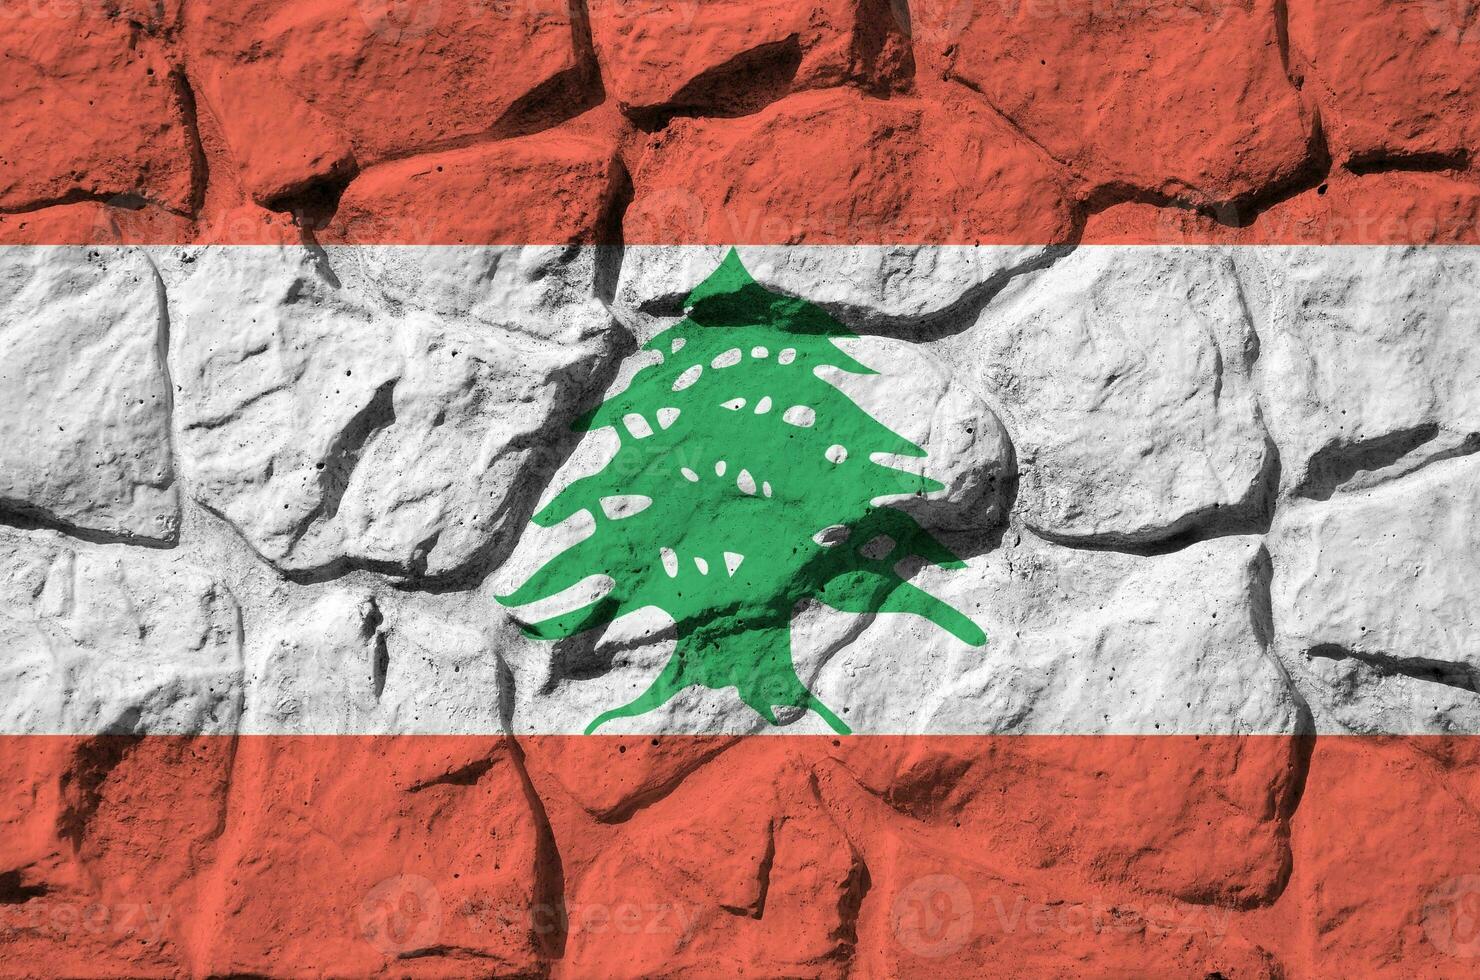 libanon flagga avbildad i måla färger på gammal sten vägg närbild. texturerad baner på sten vägg bakgrund foto